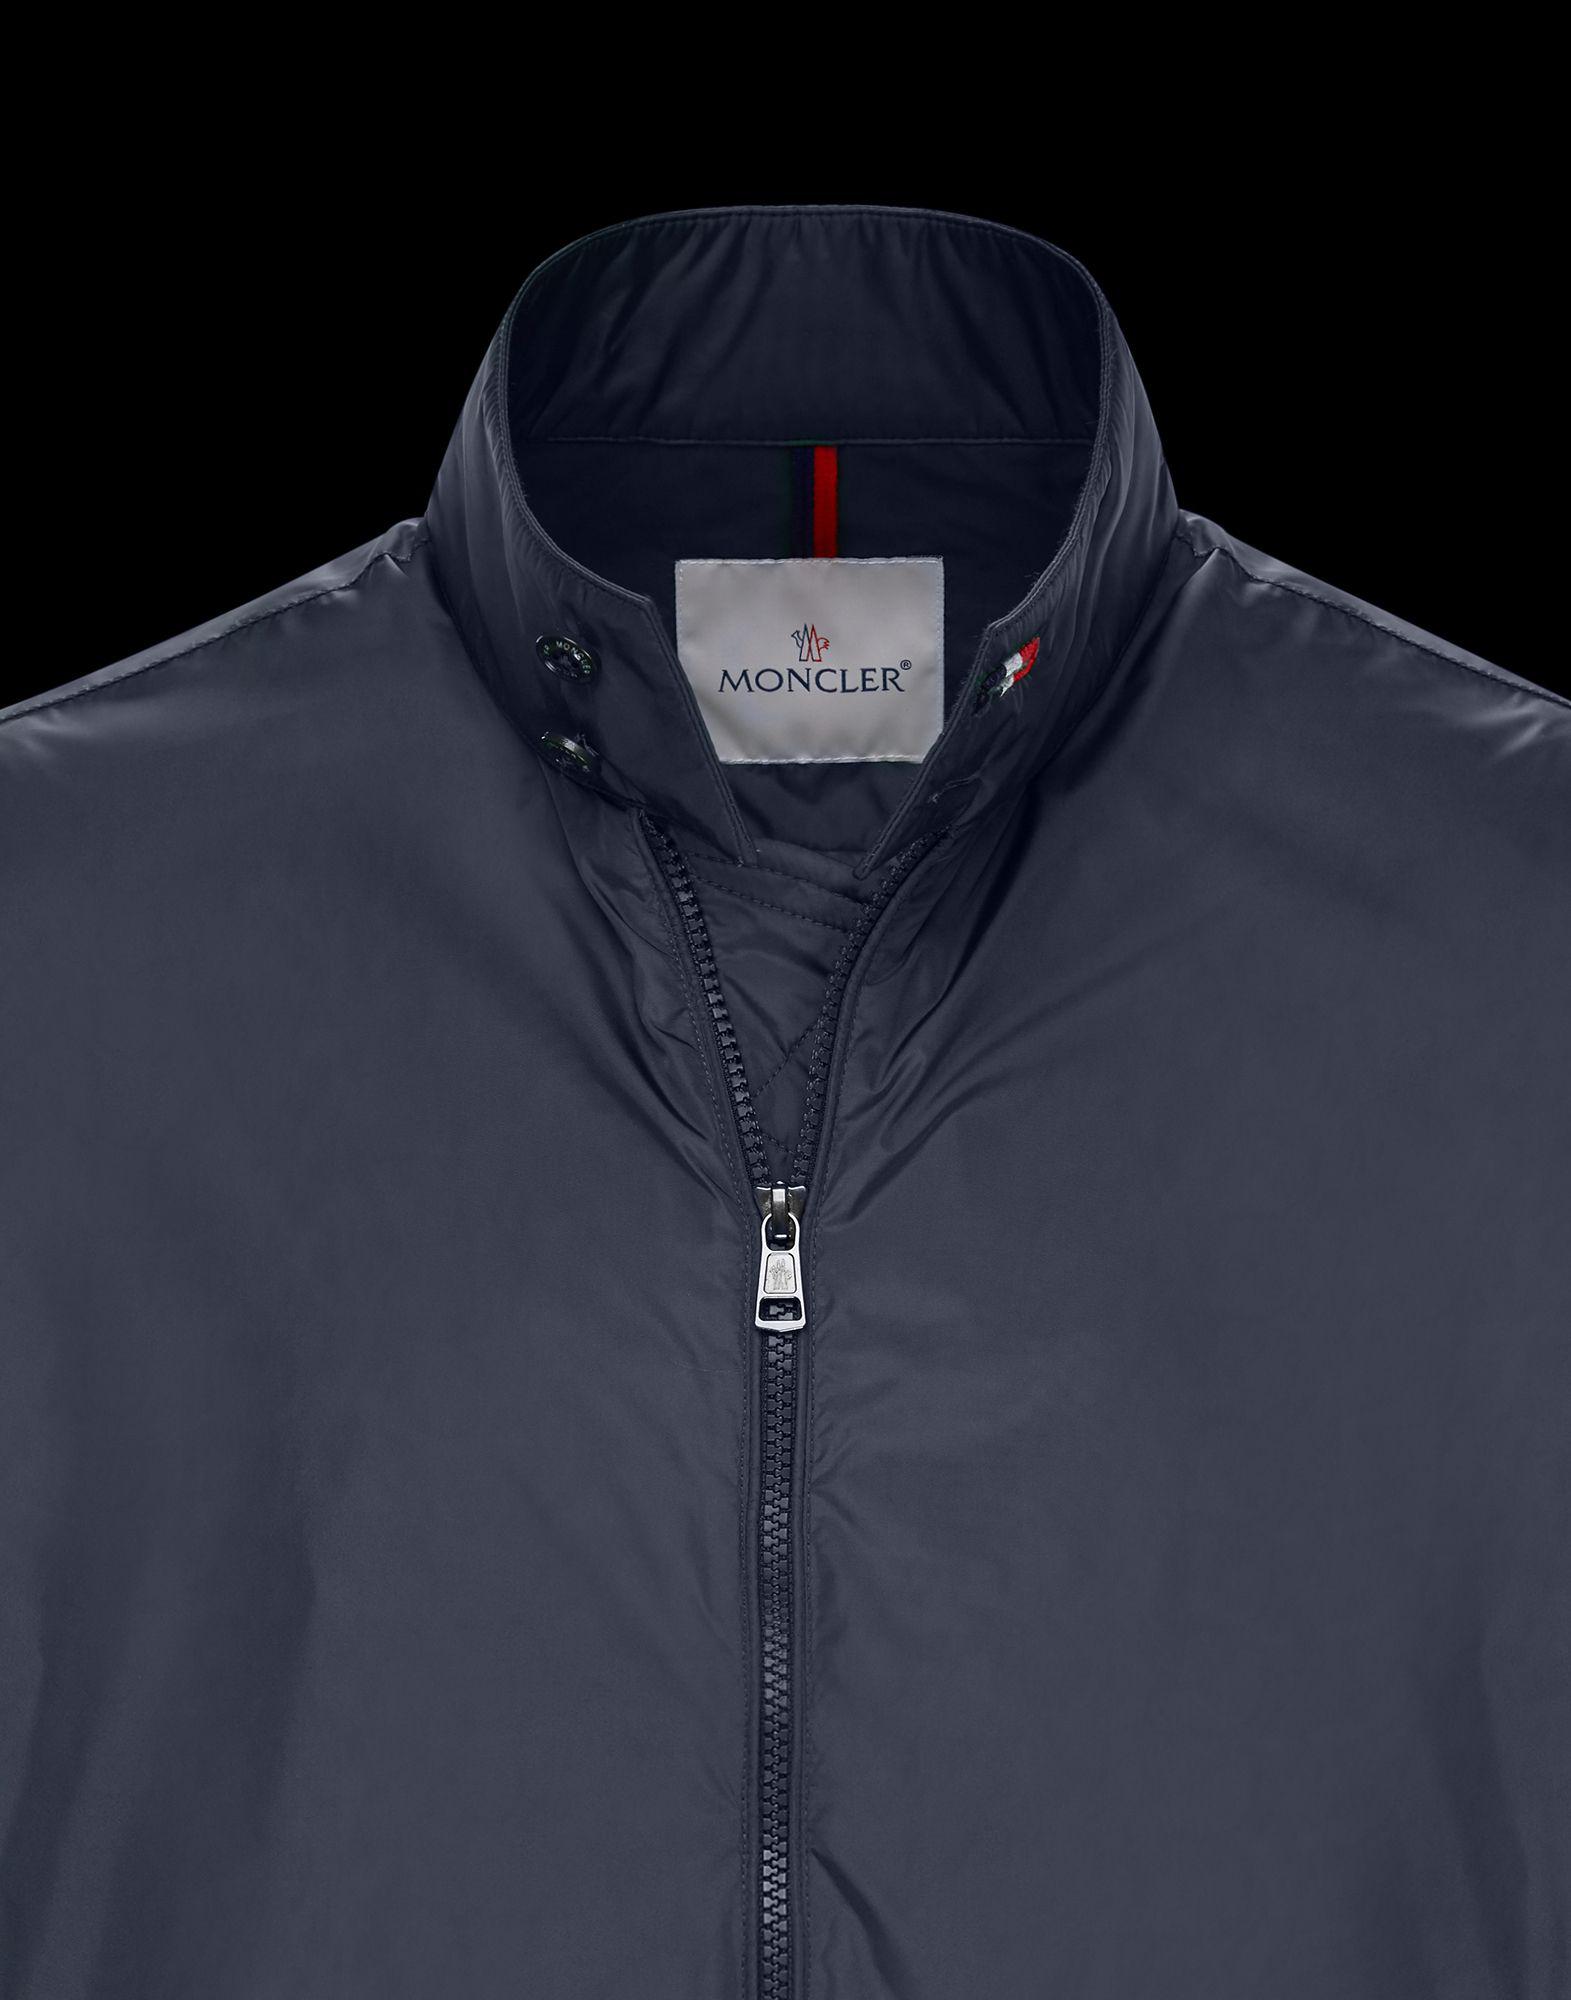 moncler allier jacket, Off 73%, www.halanifoods.com